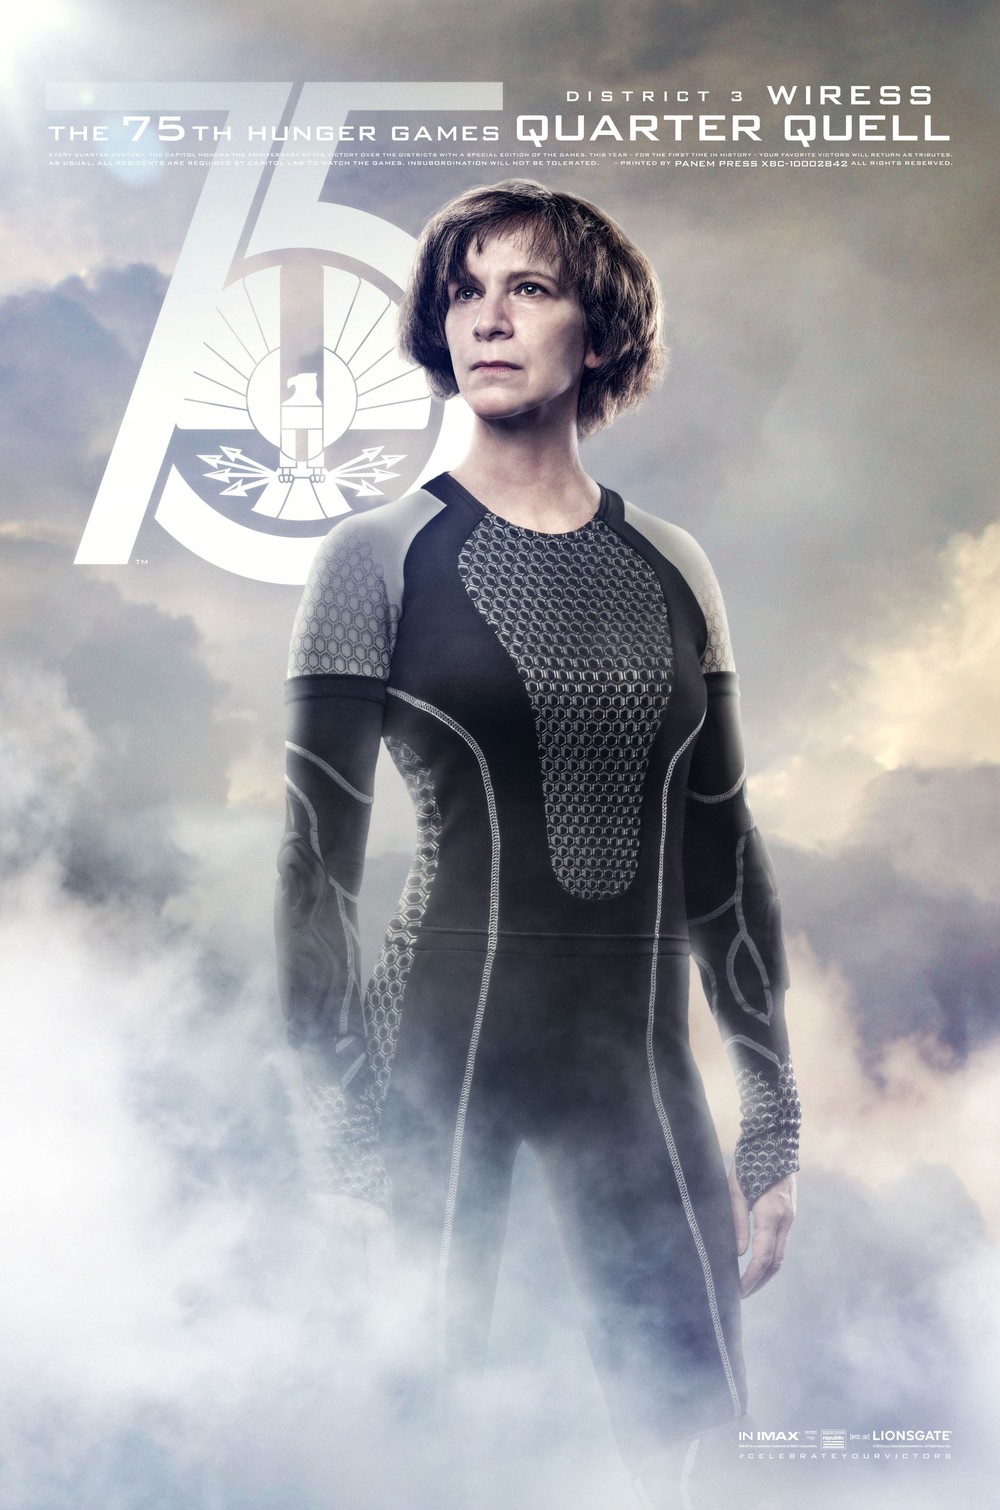 The Hunger Games: Catching Fire DVD Release Date | Redbox, Netflix